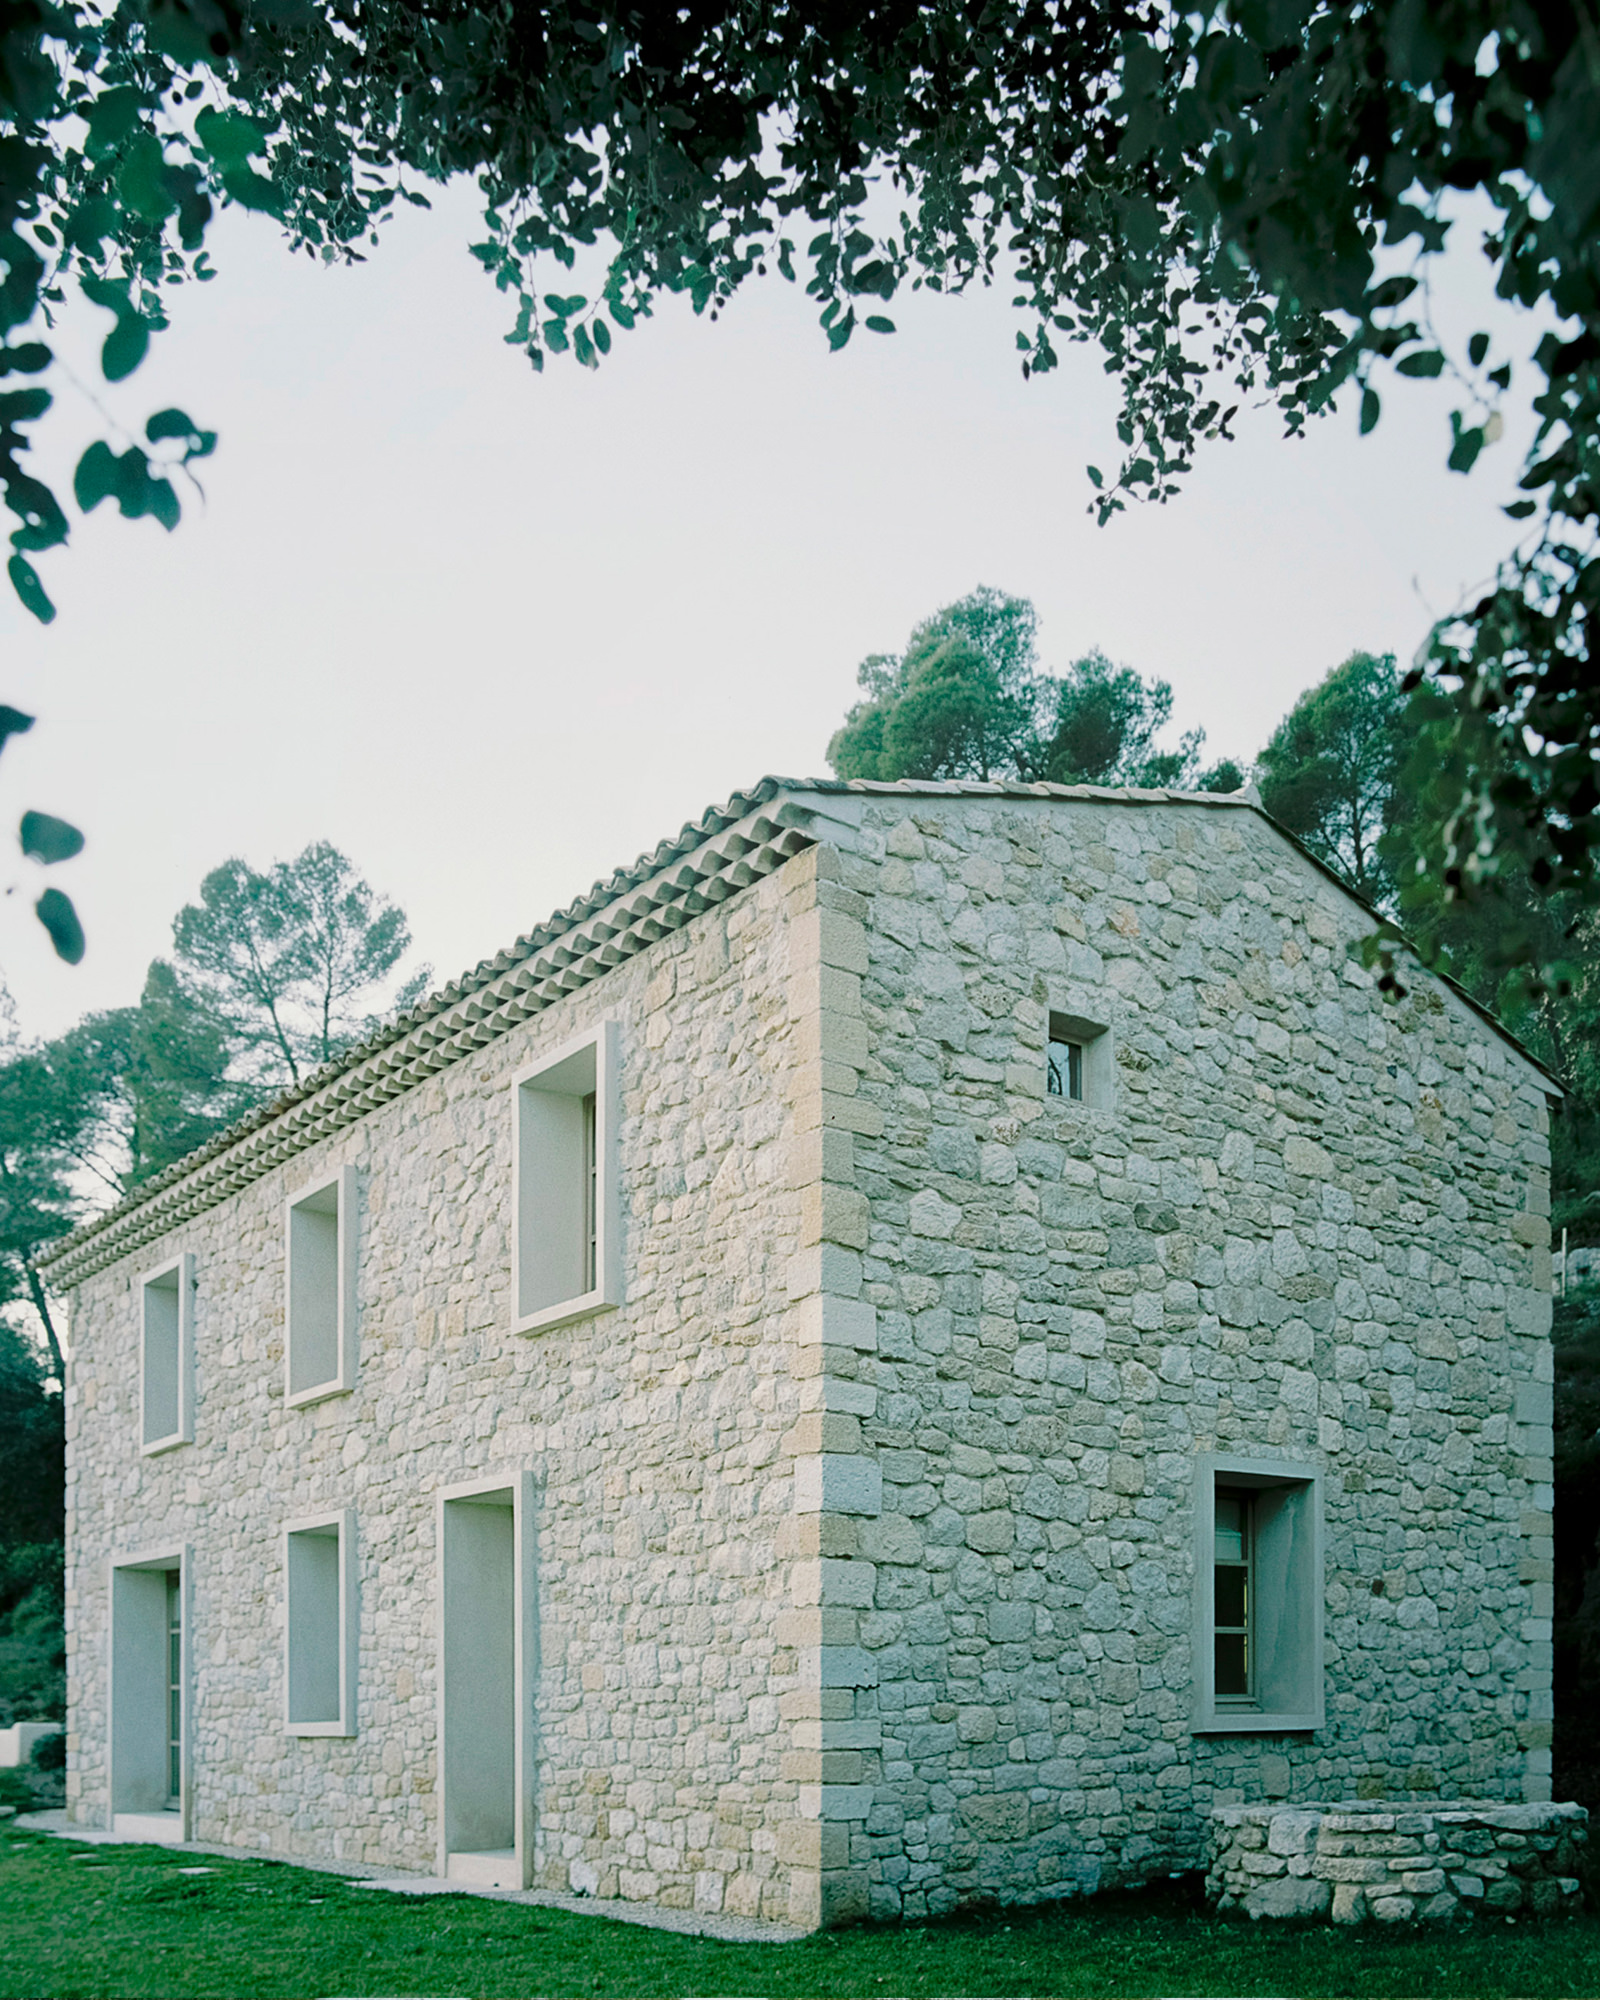 Mercier giữ nguyên đá từ cấu trúc ban đầu của trang trại để tạo thành mặt tiền của ngôi nhà.